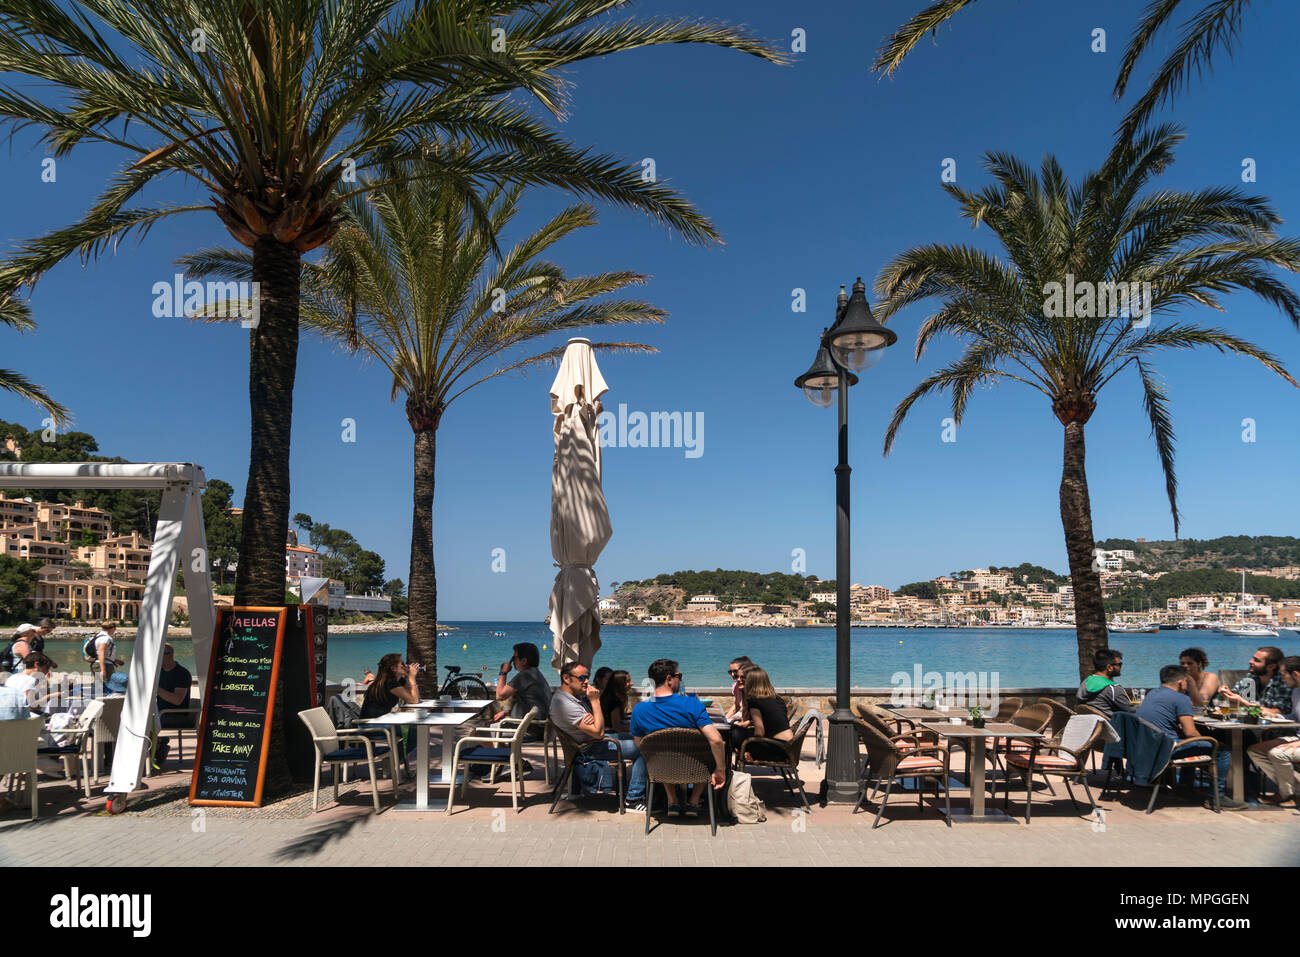 Cafe an der Strandpromenade  in Port de Soller, Mallorca, Balearen, Spanien  |  beach promenade cafe, Port de Soller, Majorca, Balearic Islands, Spain Stock Photo